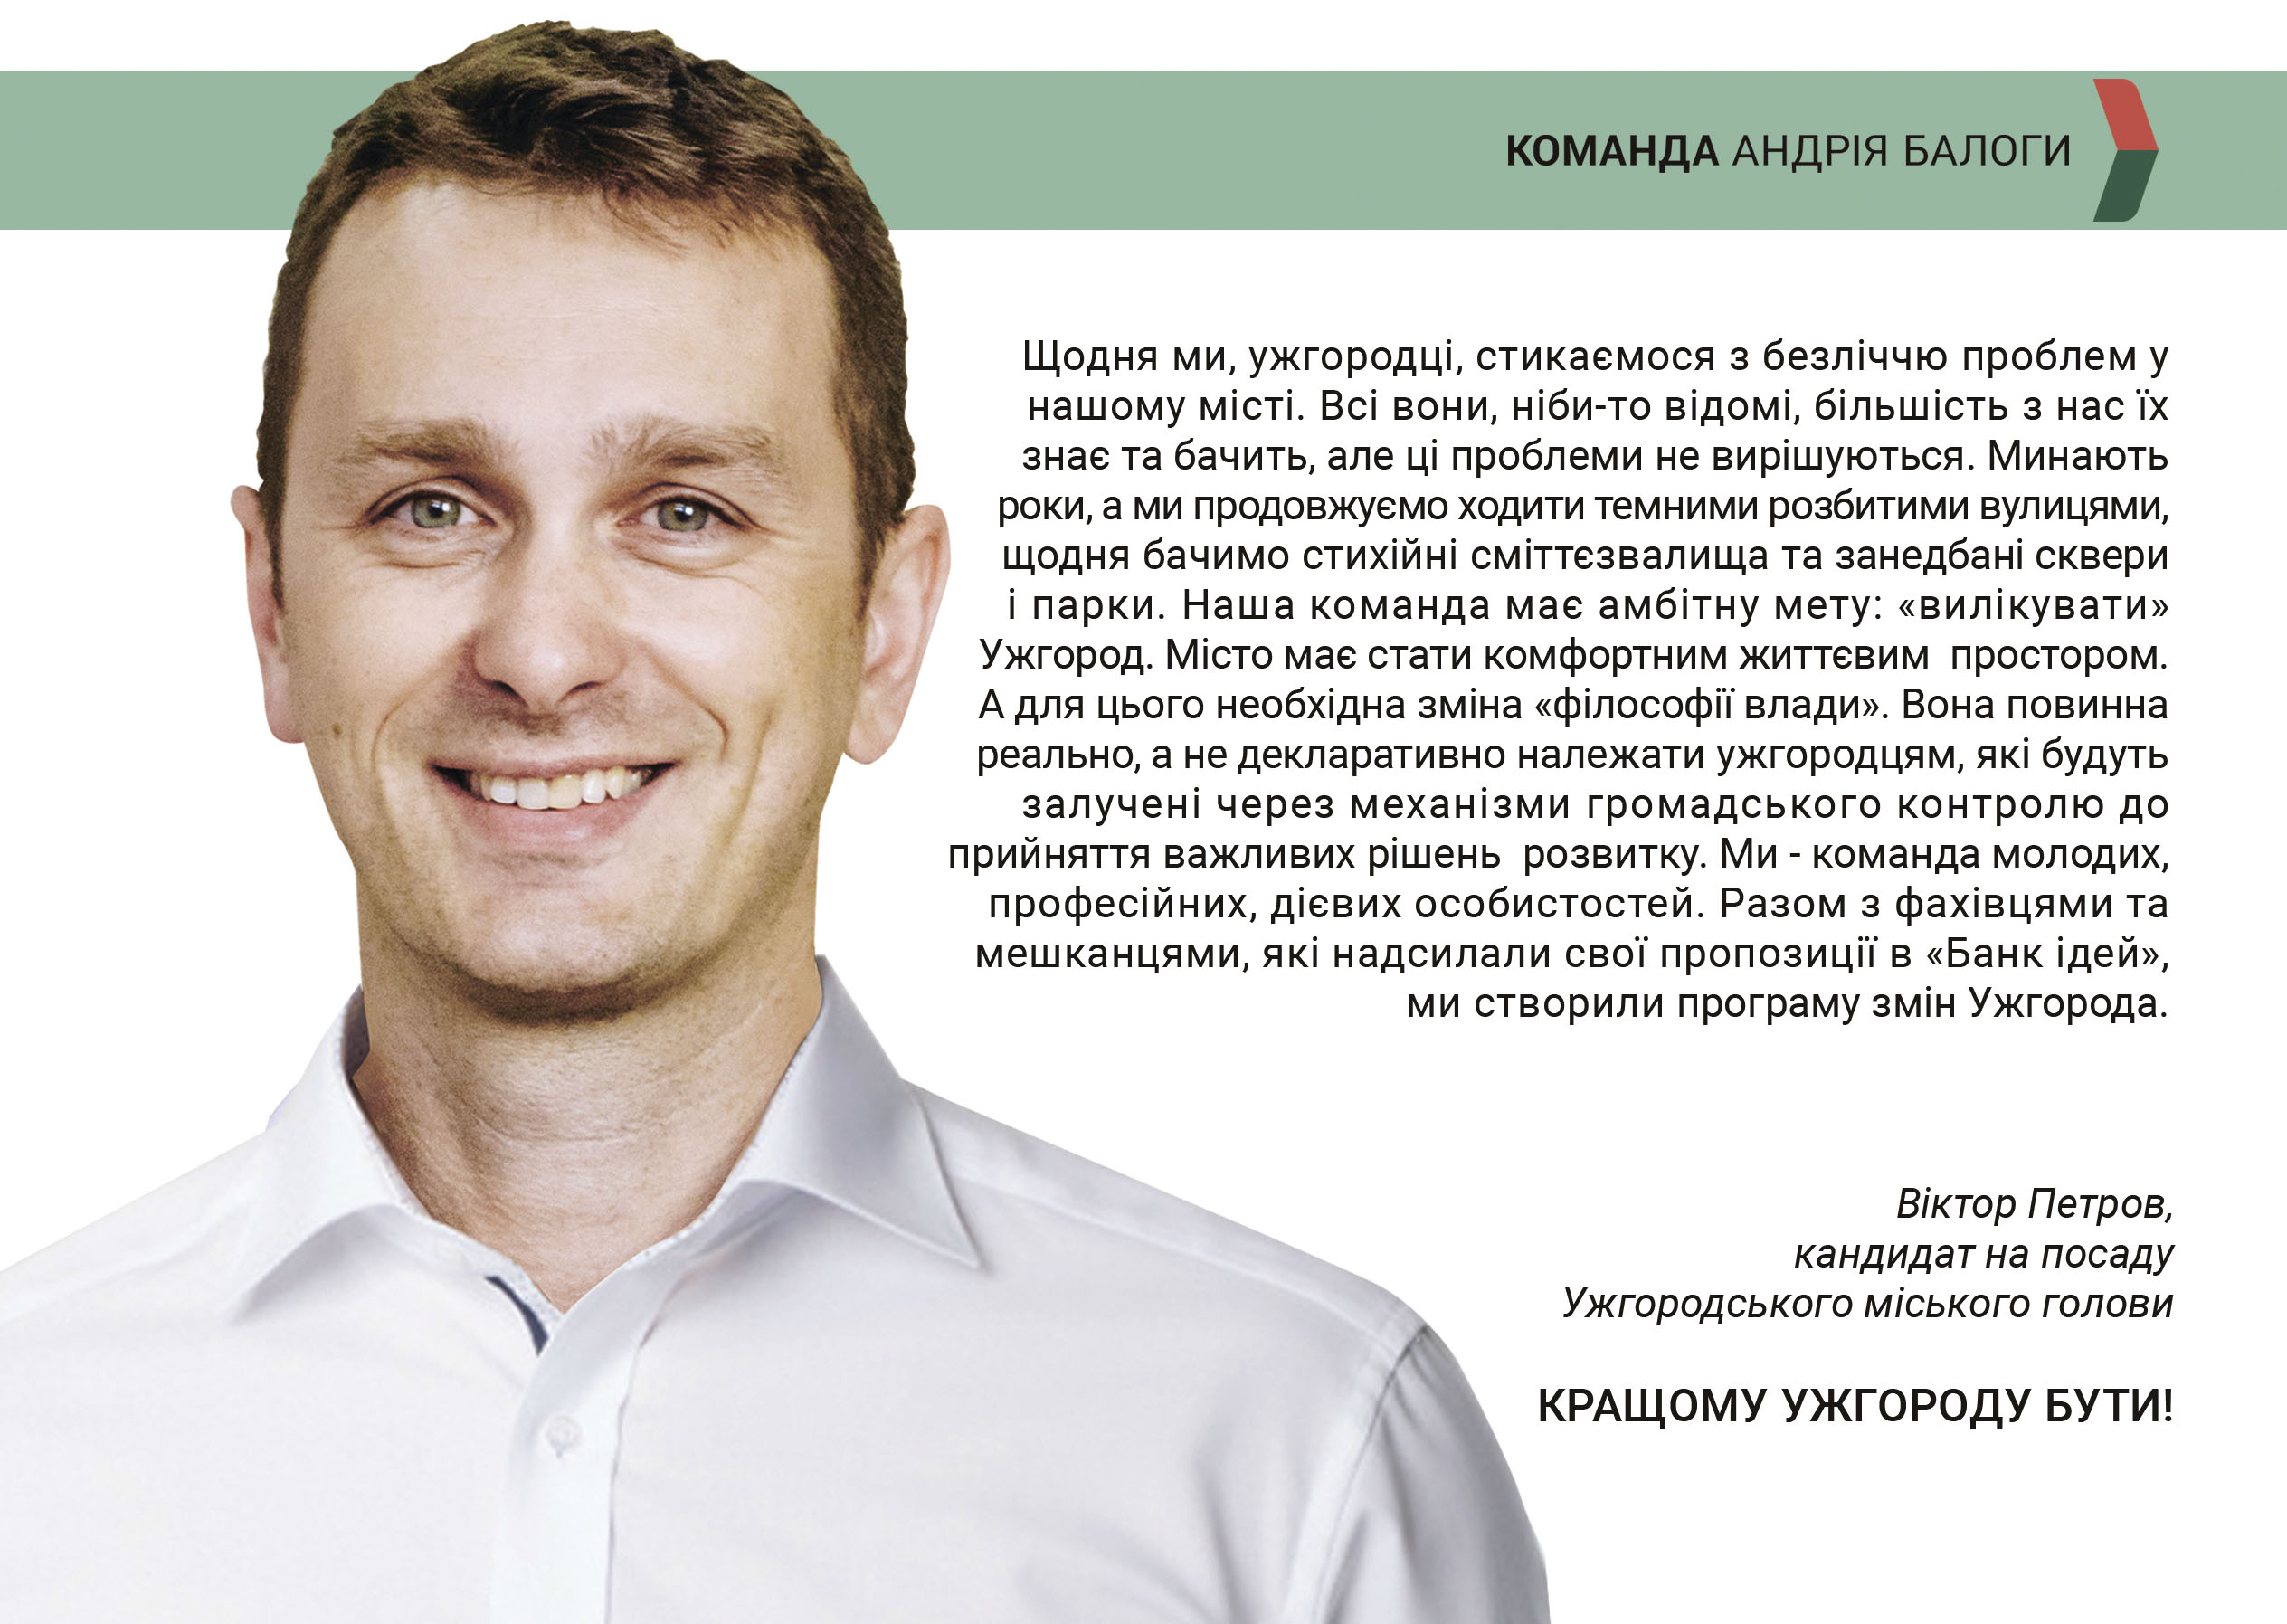 Віктор Петров представив програму дій на посаді Ужгородського міського голови